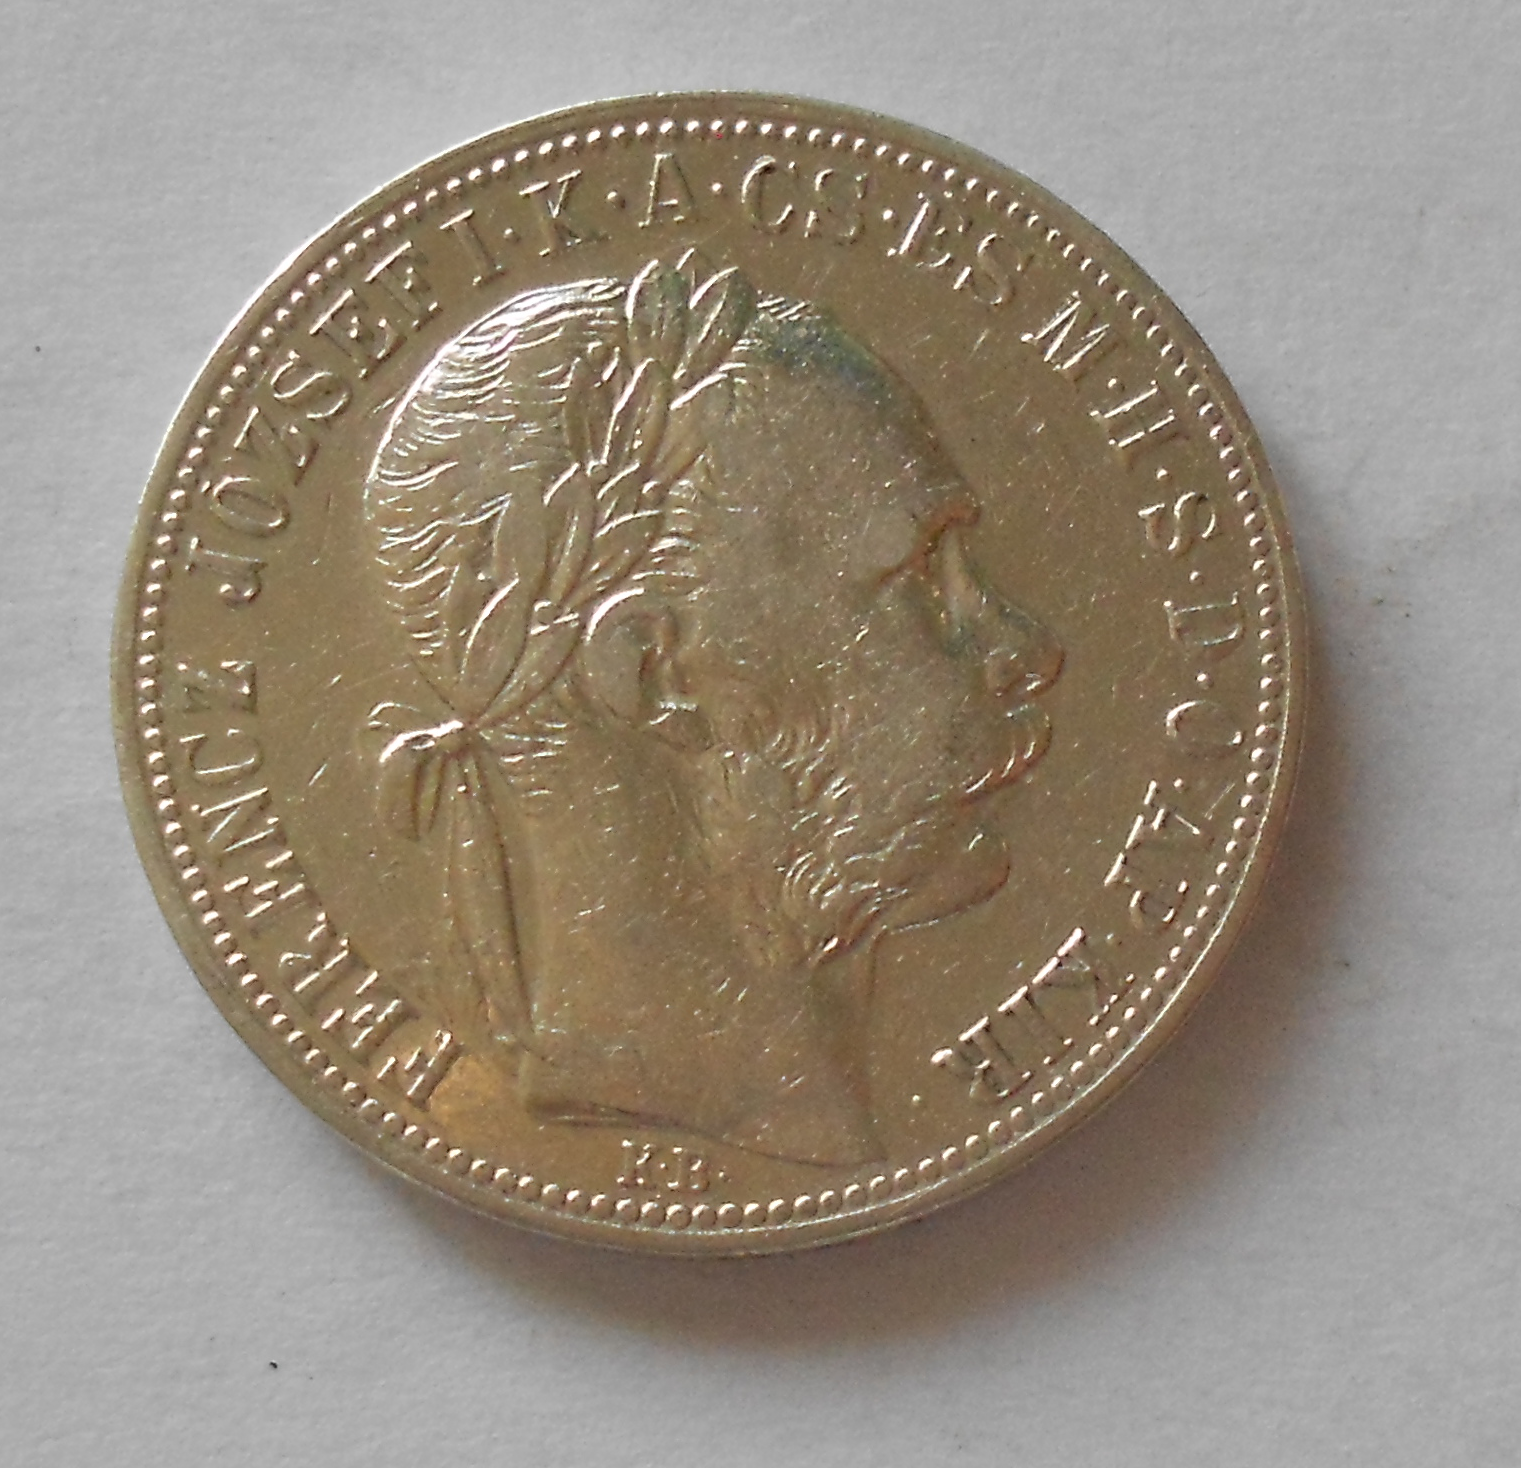 Rakousko 1 Zlatník/Gulden 1887 KB, stav